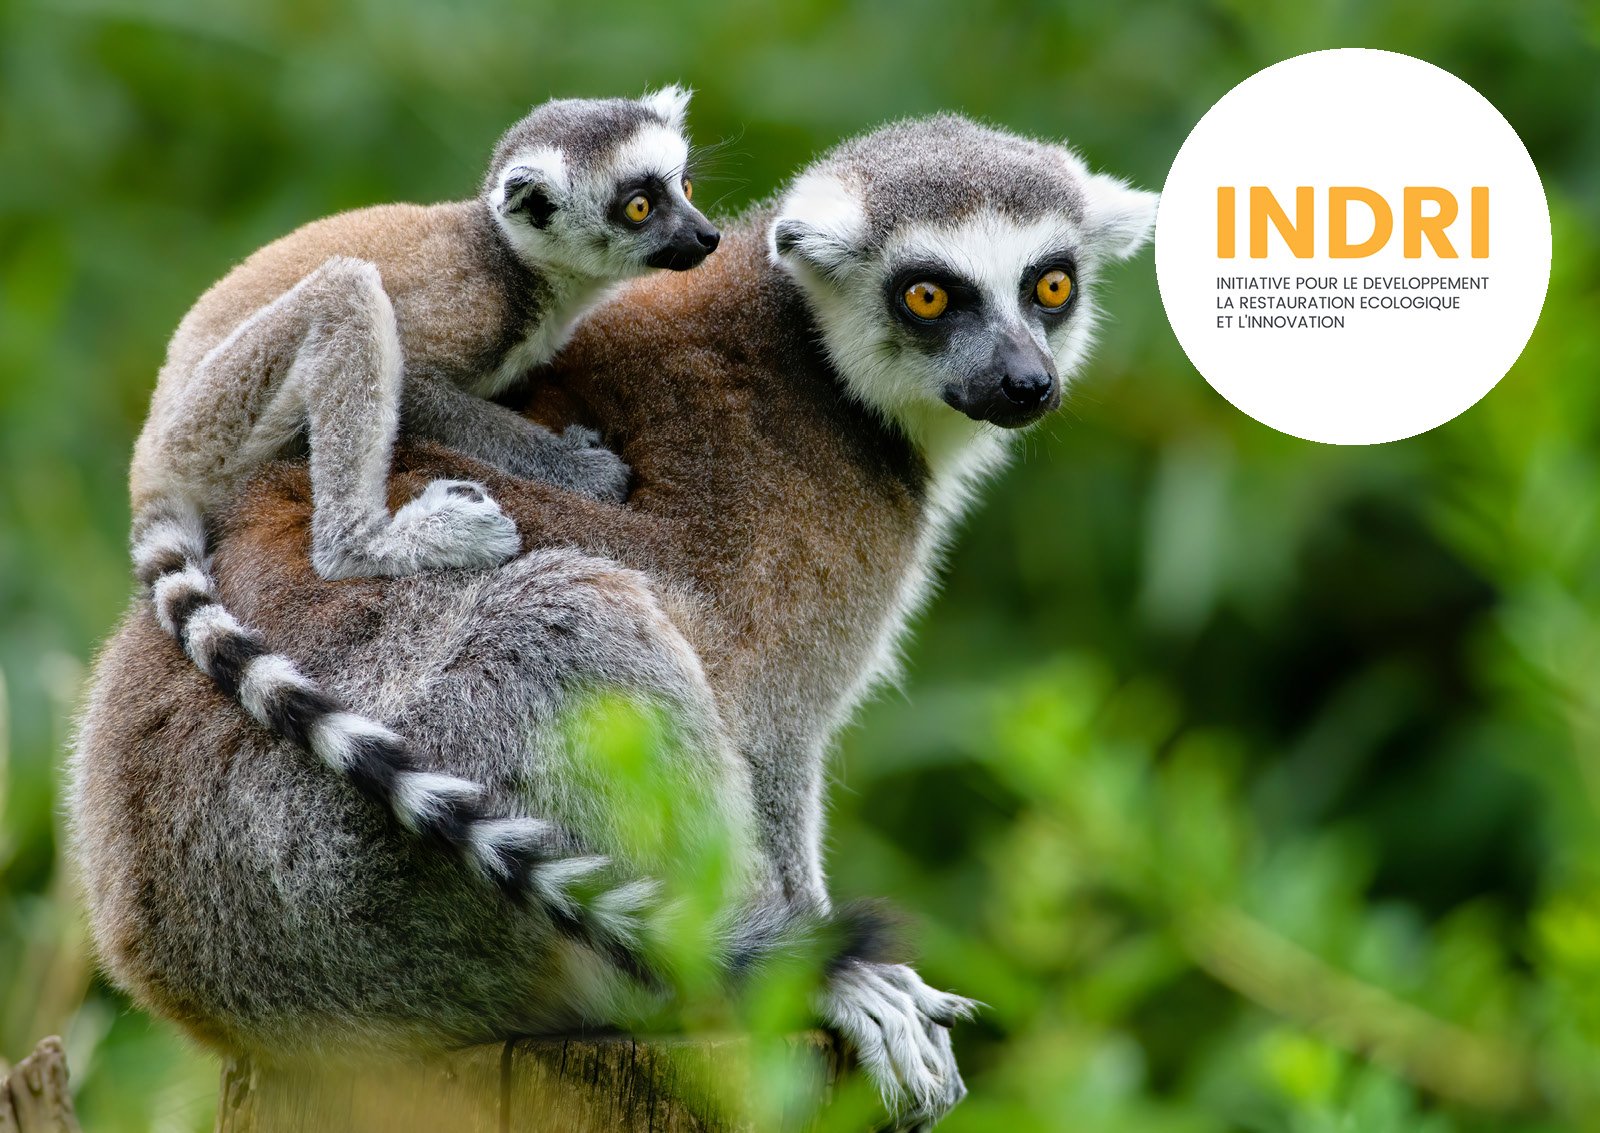  INDRI, l’Initiative pour le Développement, la Restauration écologique et l’Innovation